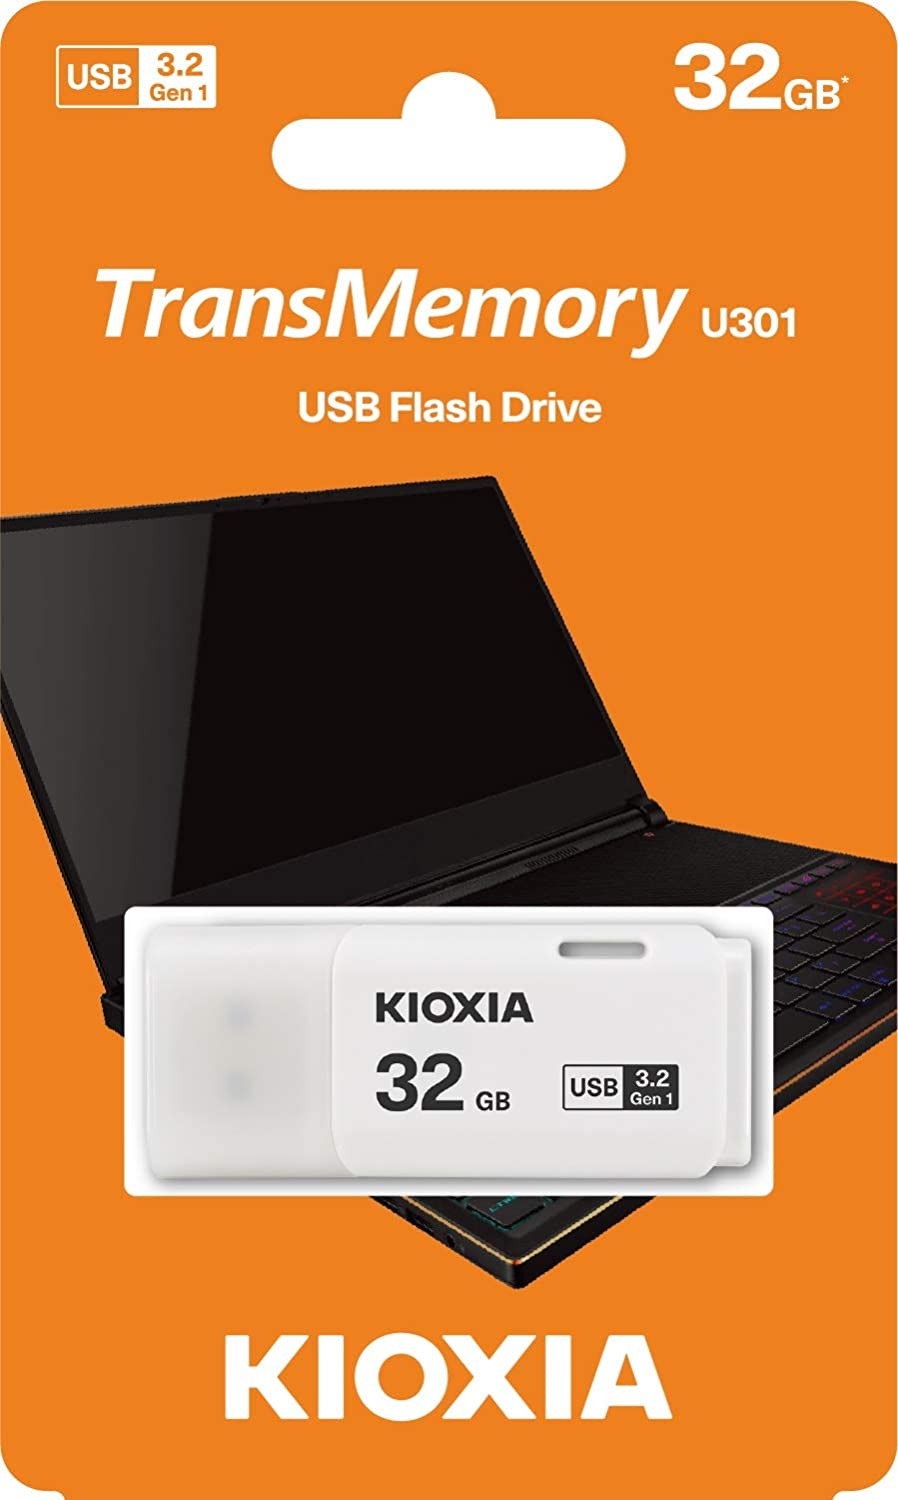 Kioxia USB-Flashdrive 32 GB USB3.0 TransMemory U301, Weiß